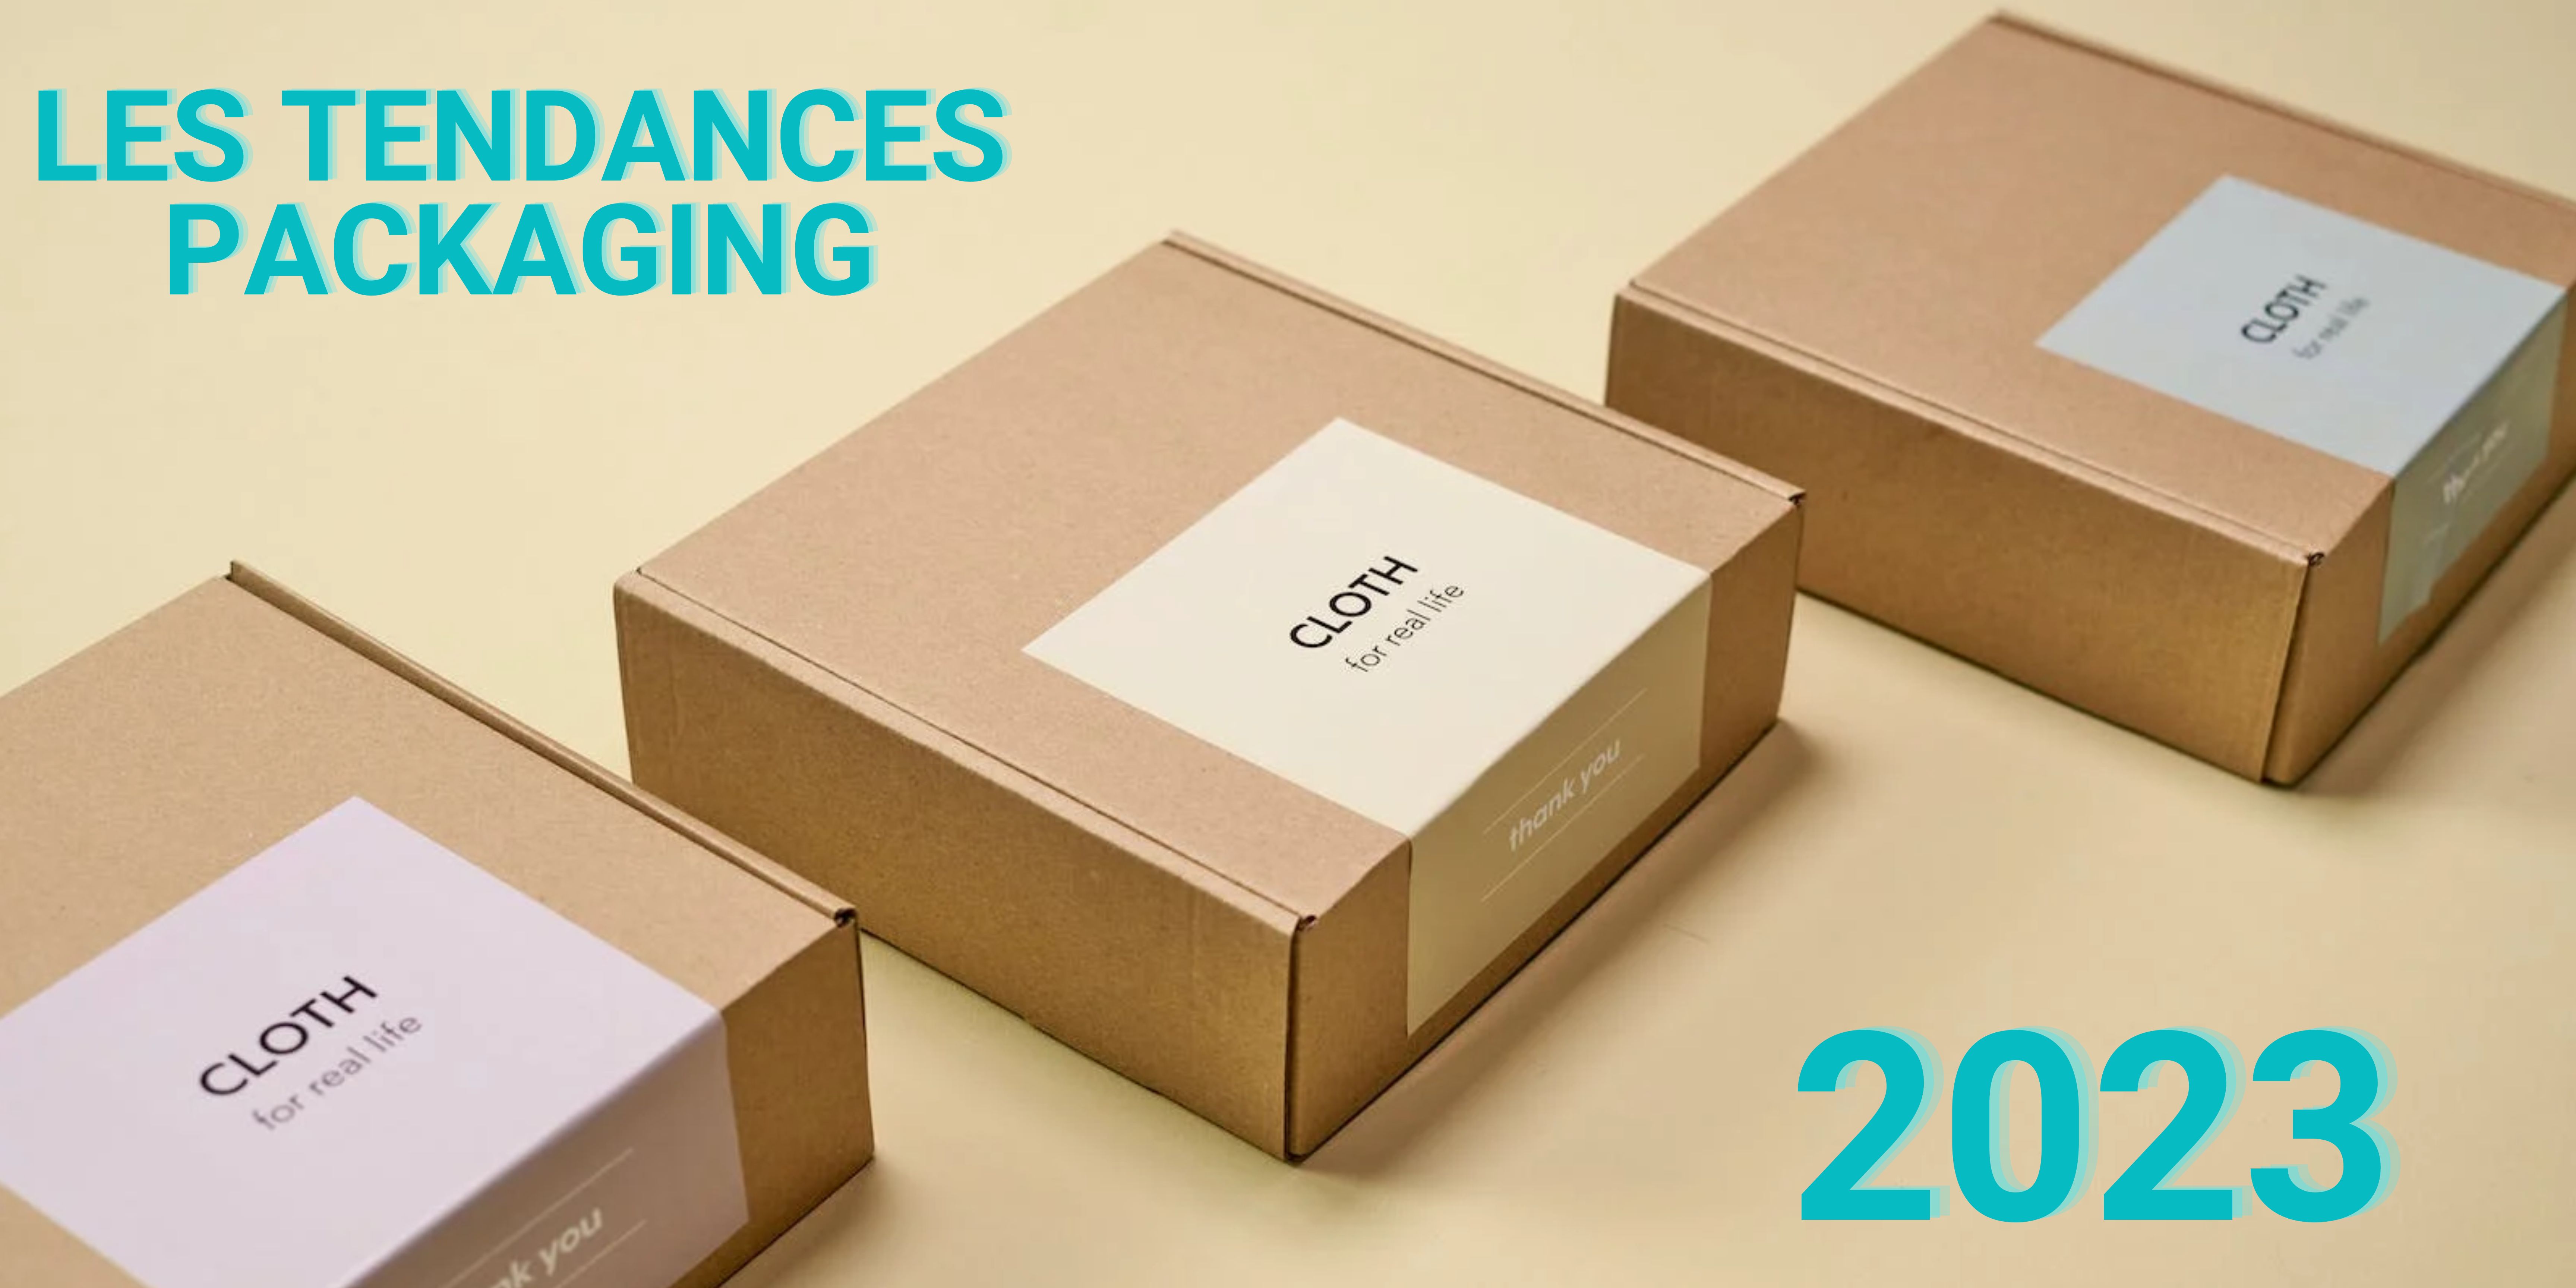 Les tendances packaging 2023